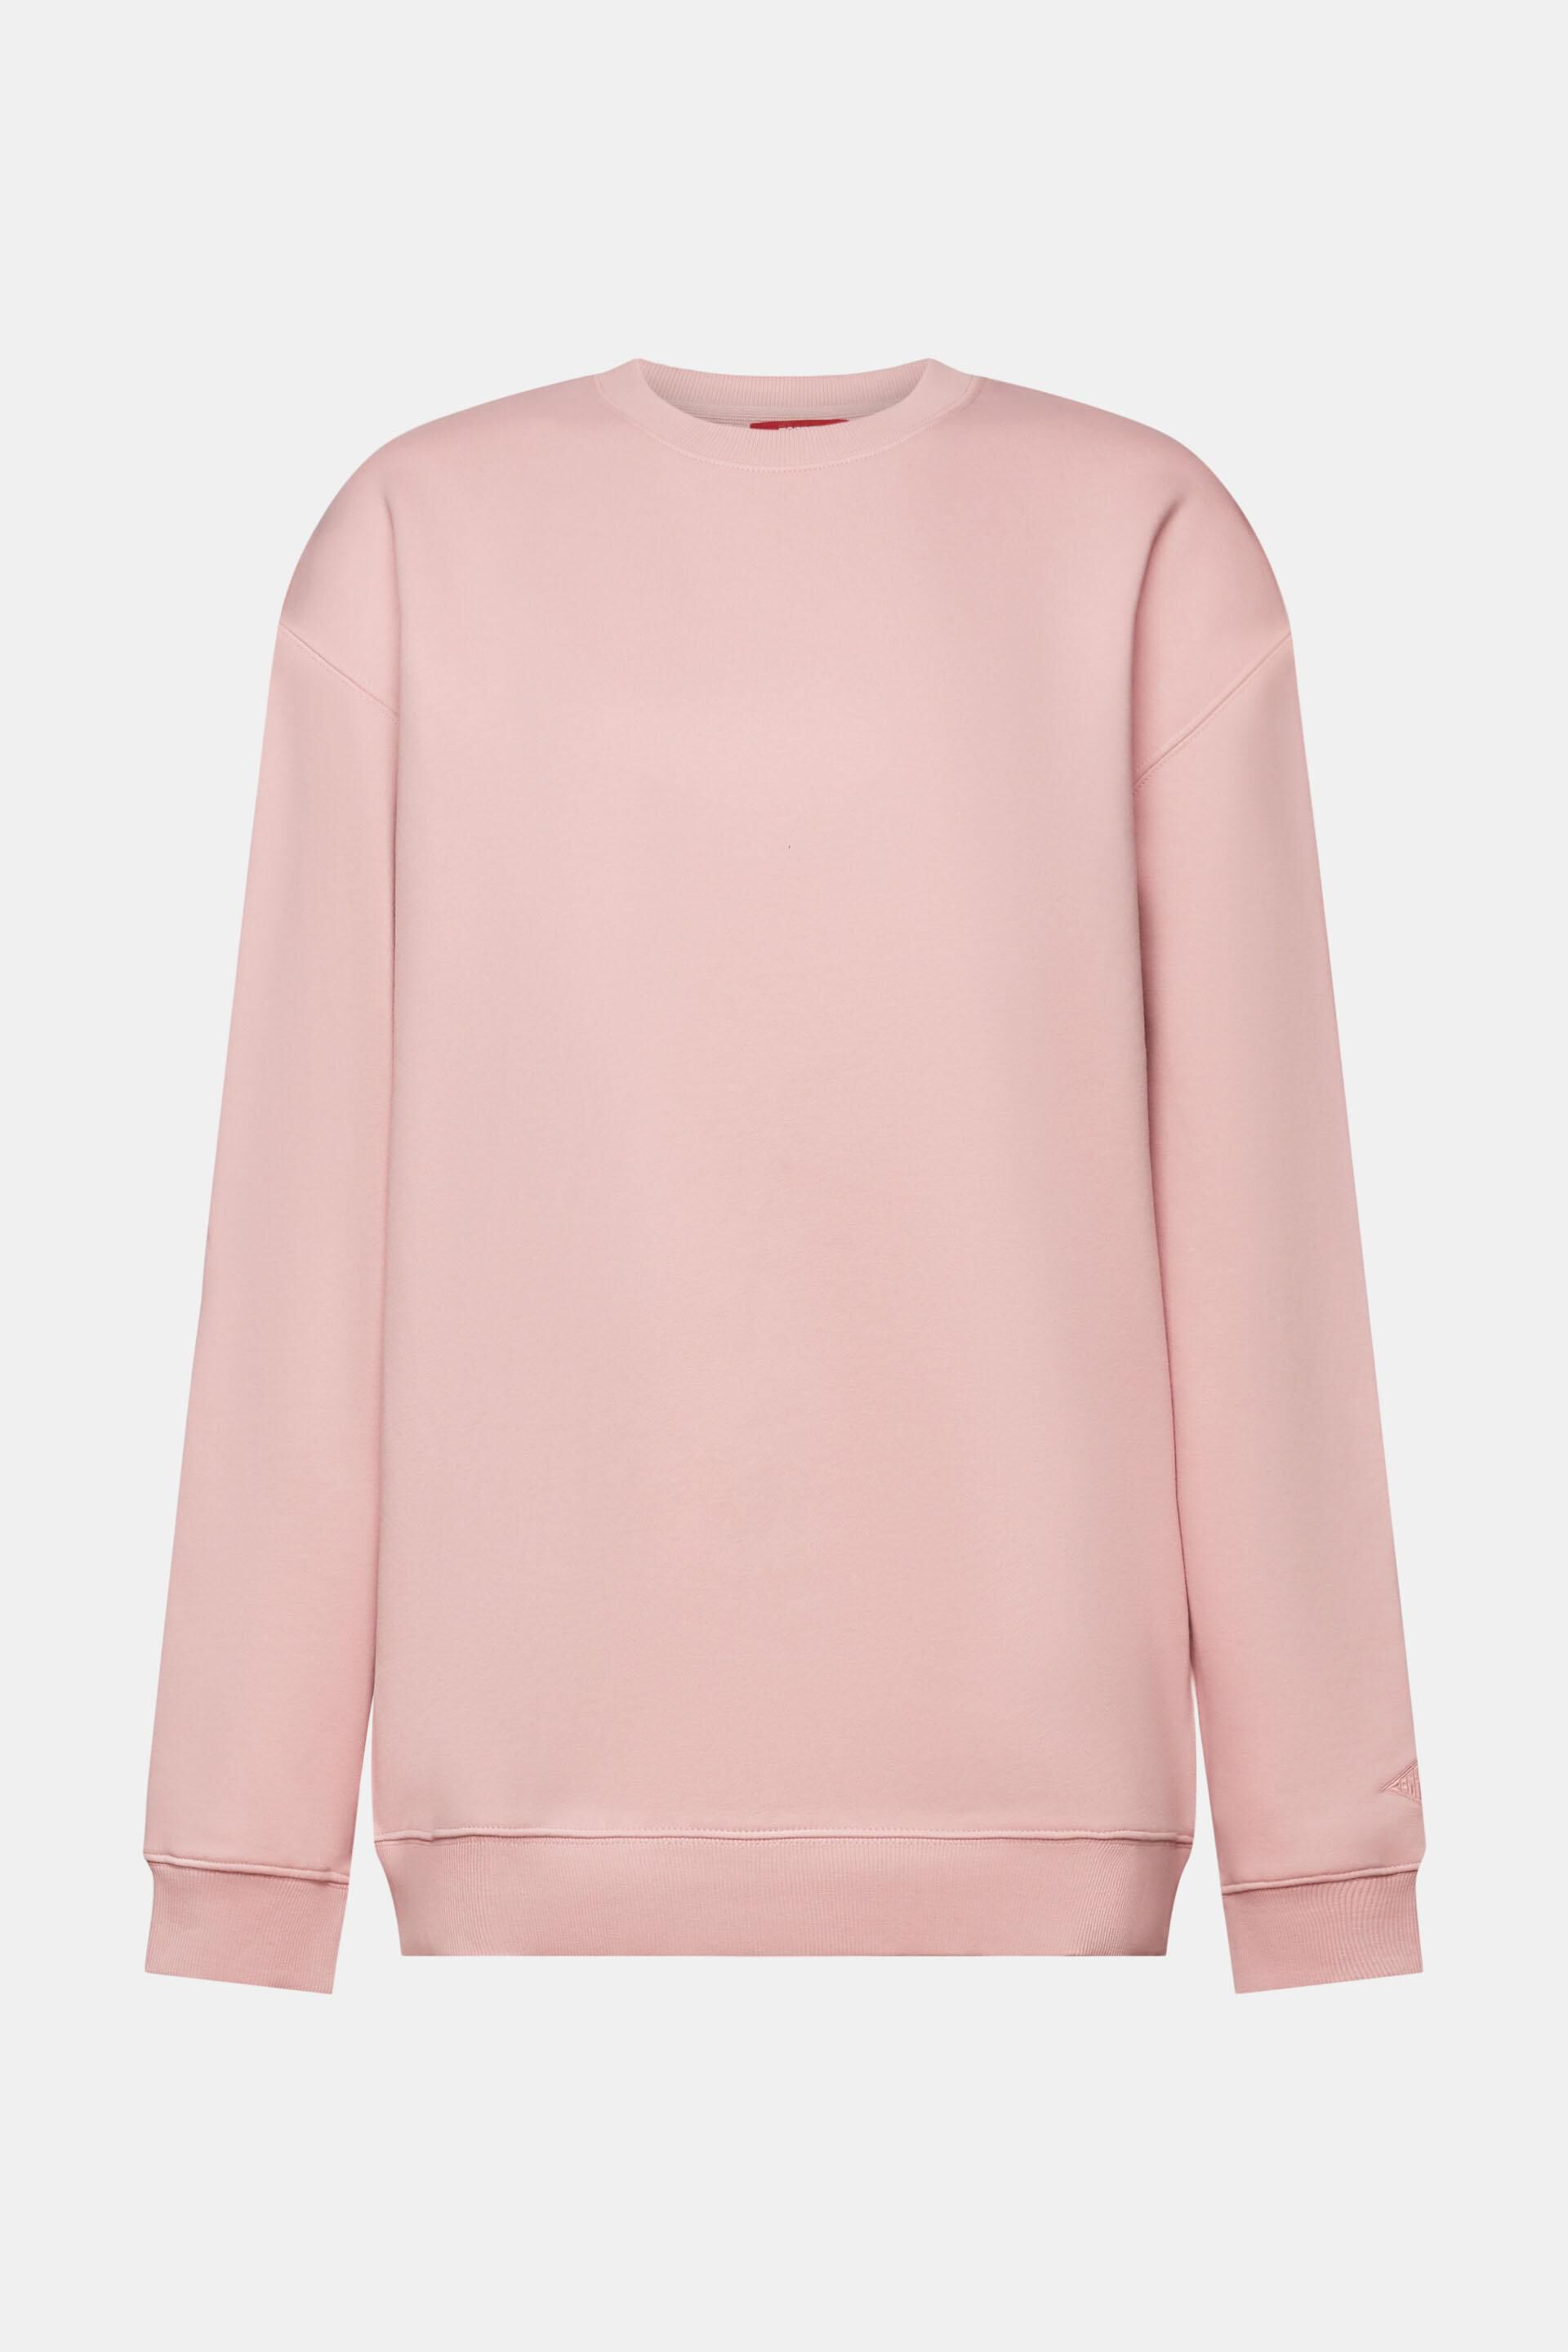 Esprit Damen Pullover-Sweatshirt aus Baumwollmischung